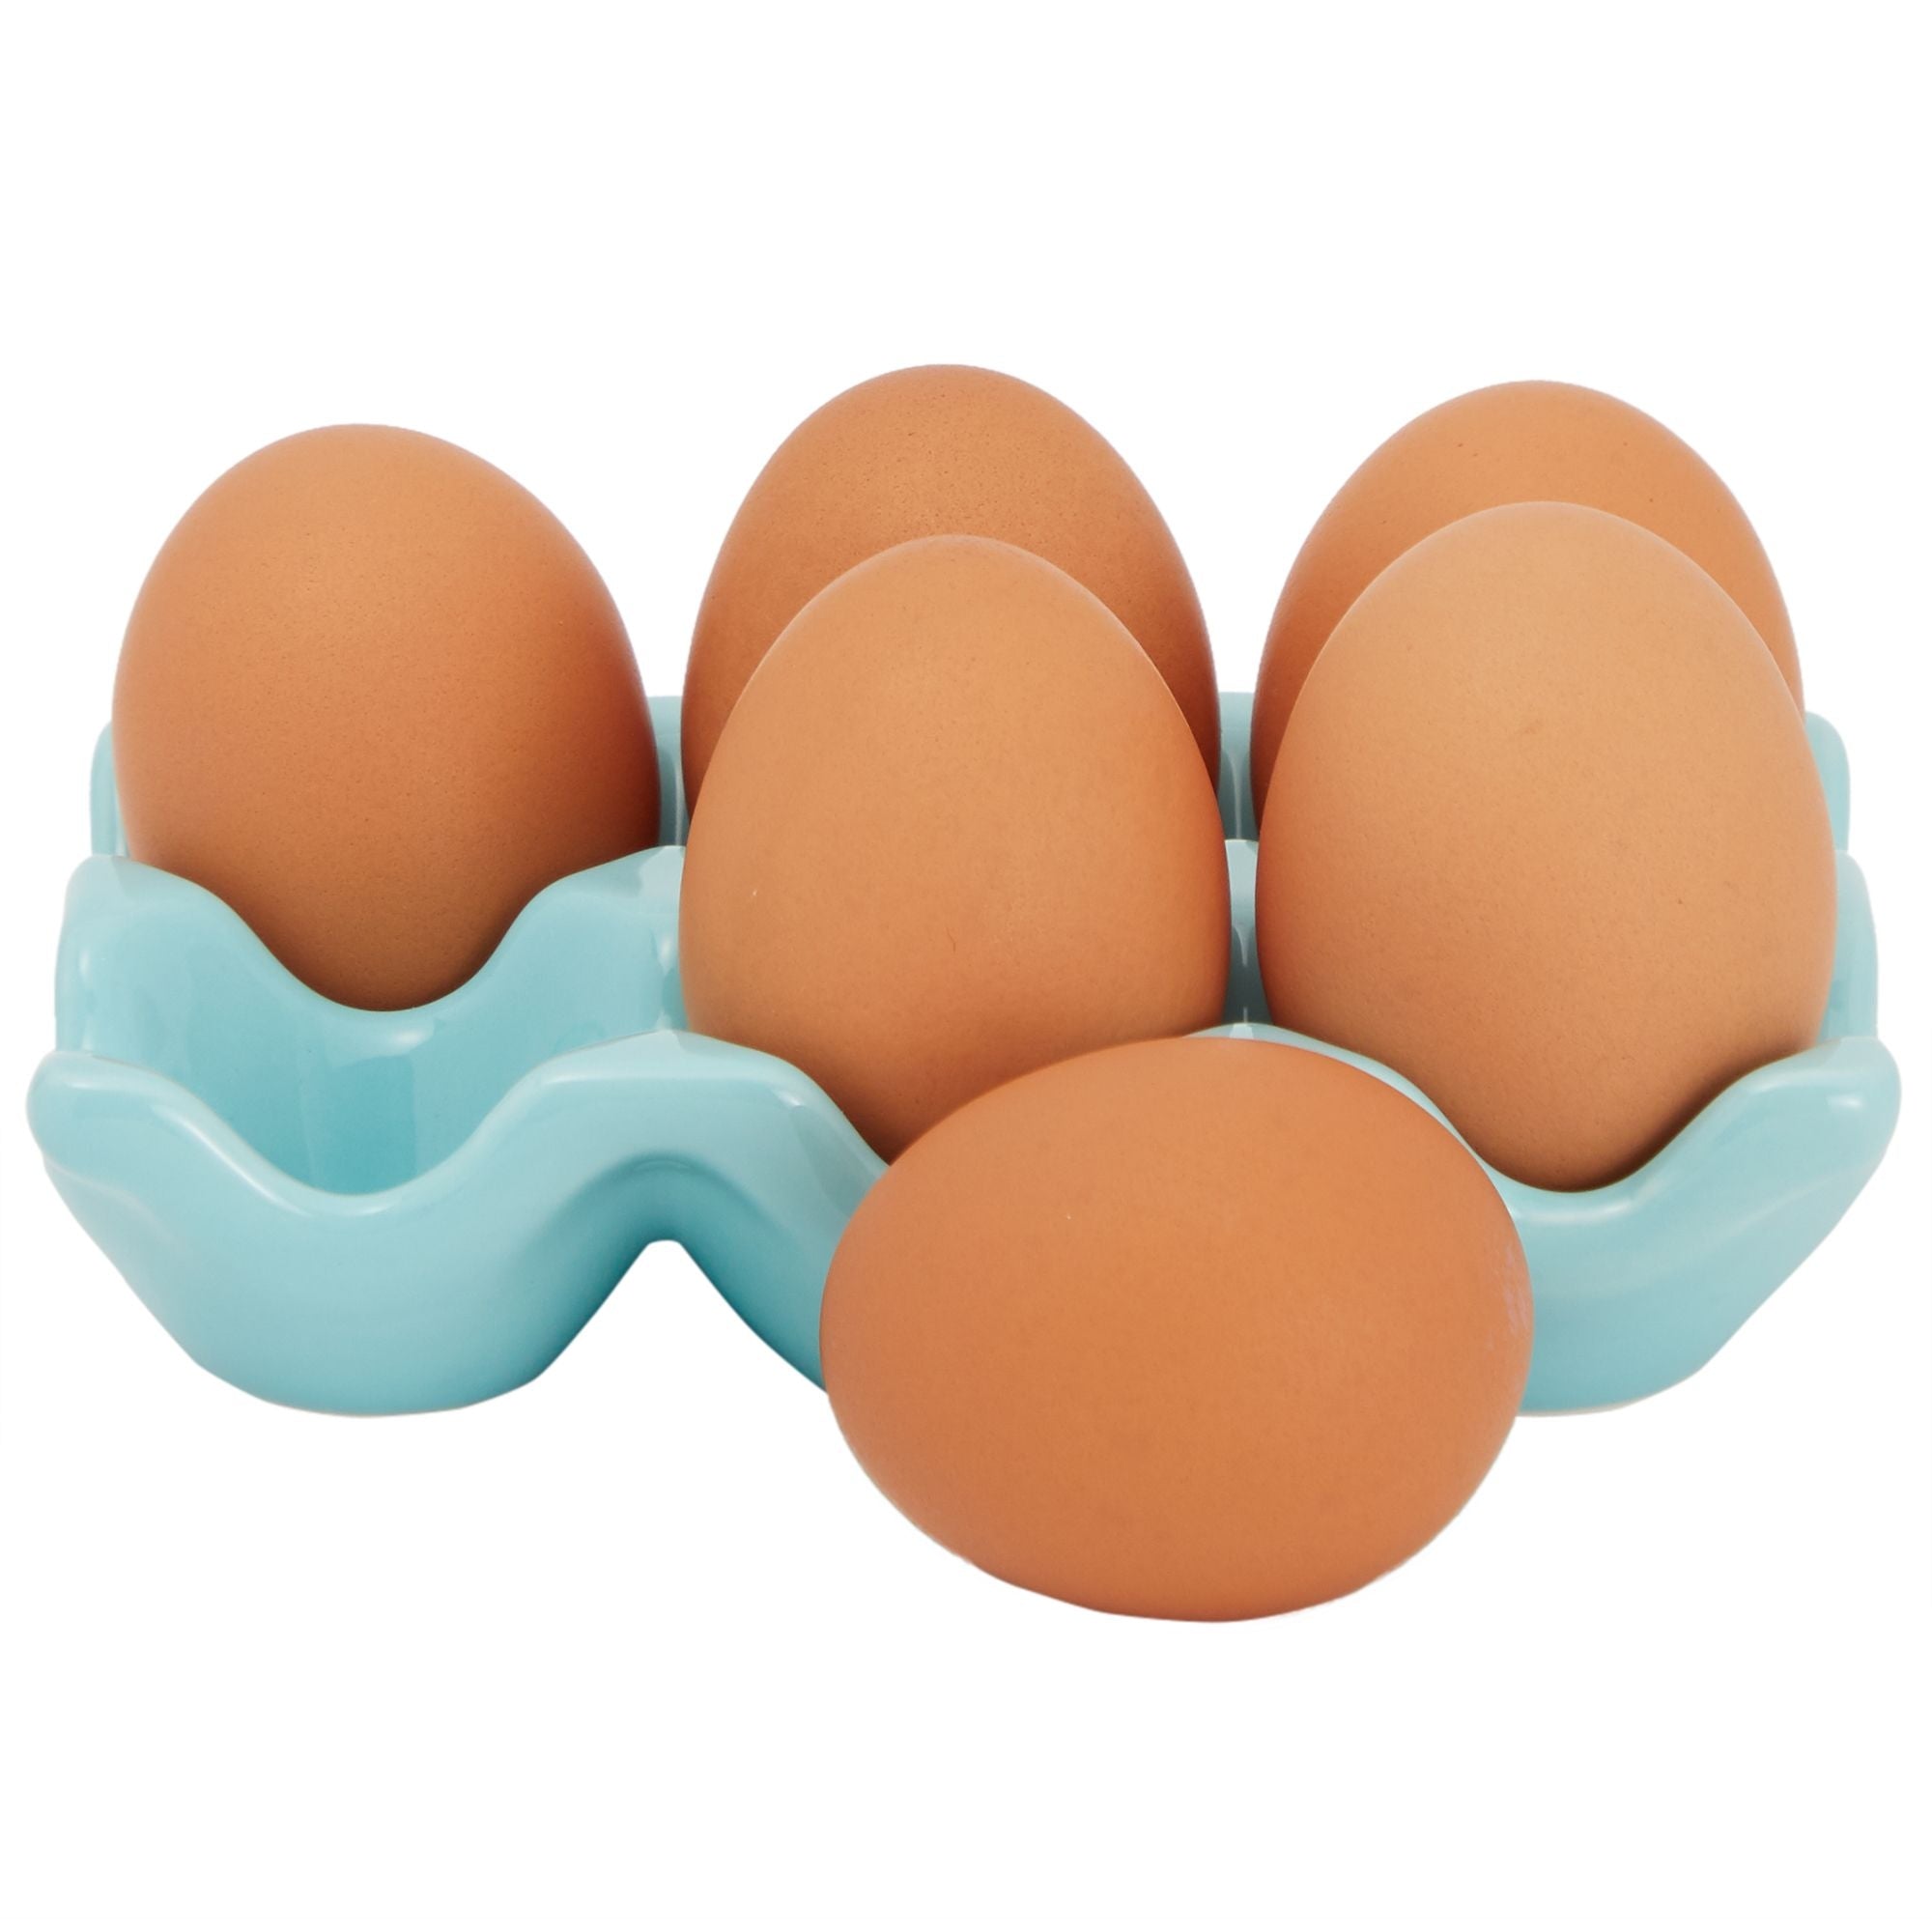 Farmlyn Creek 2 Pack Ceramic Half Dozen Egg Tray Holder For Countertop,  Refrigerator, Porcelain Egg Carton Holds 6 Chicken Eggs For Easter, Teal :  Target